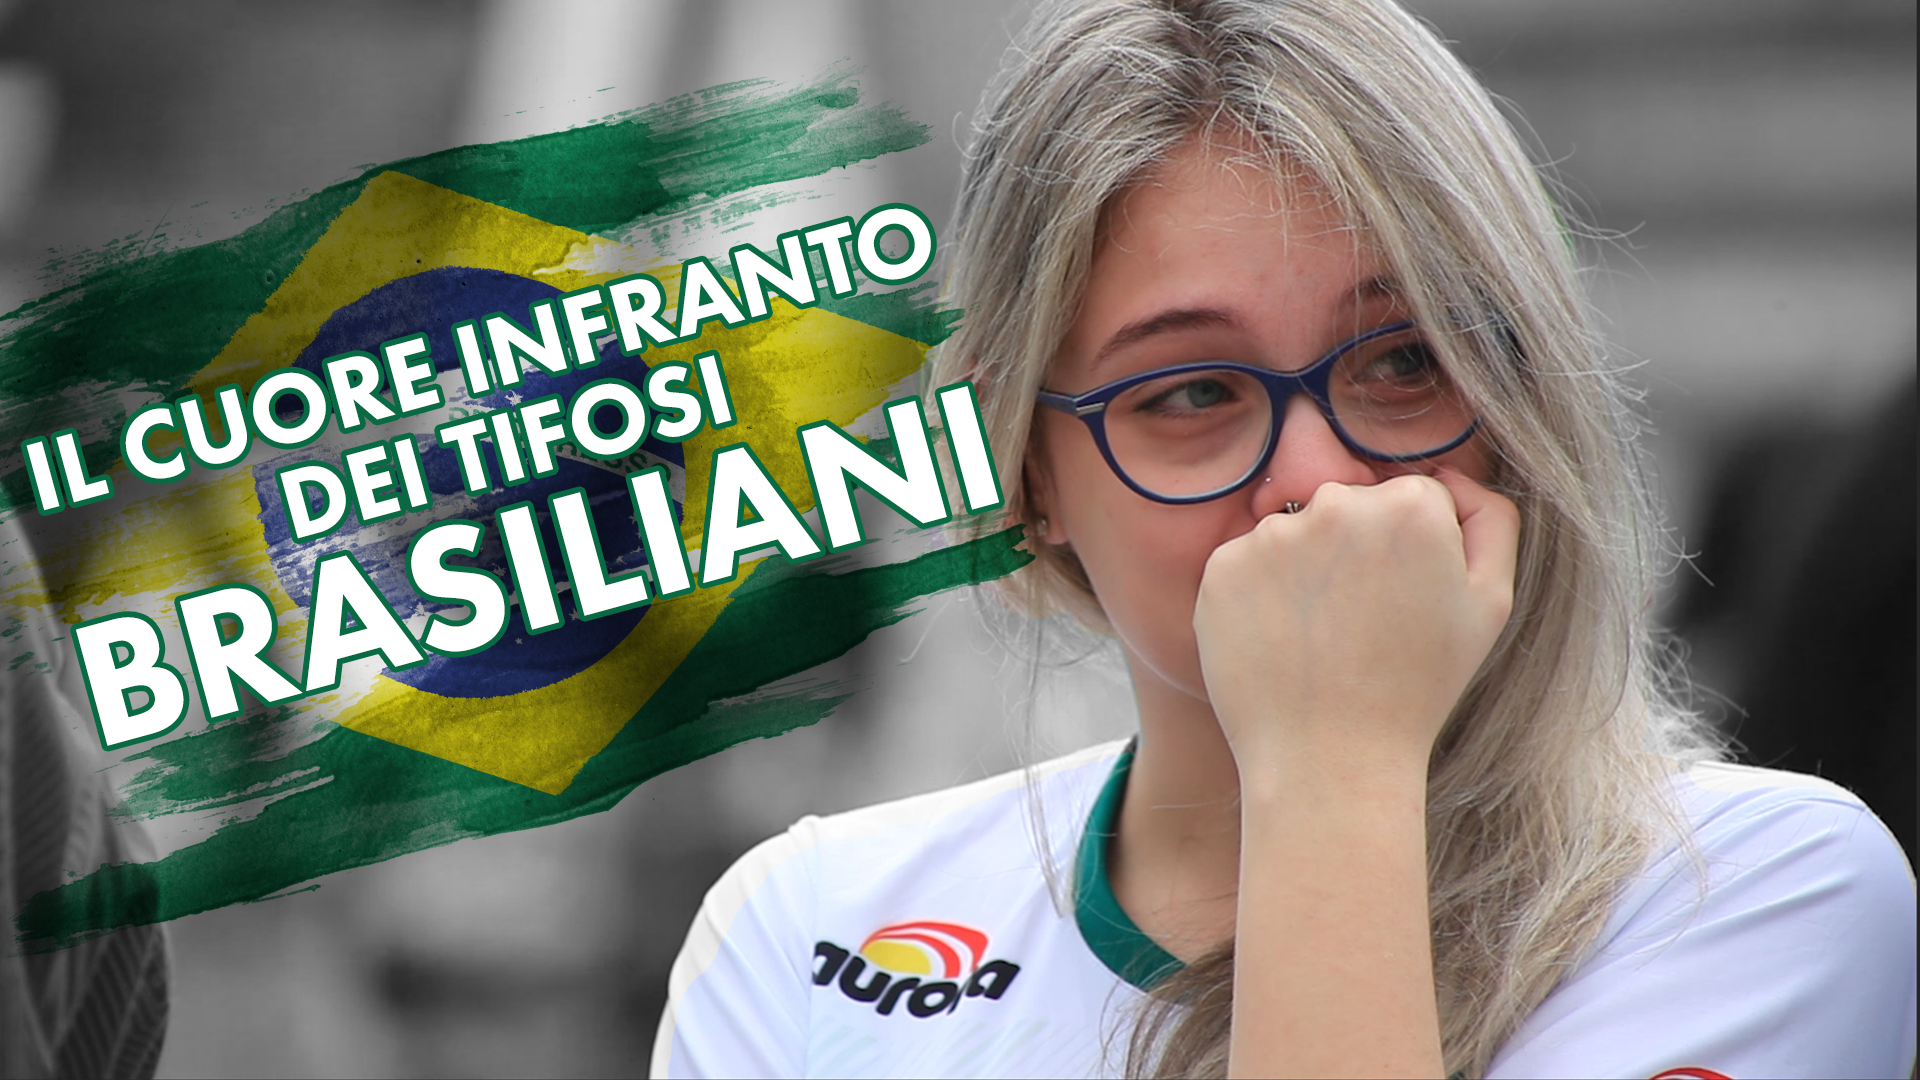 L'emozione del Brasile,il giorno dopo il disastro aereo